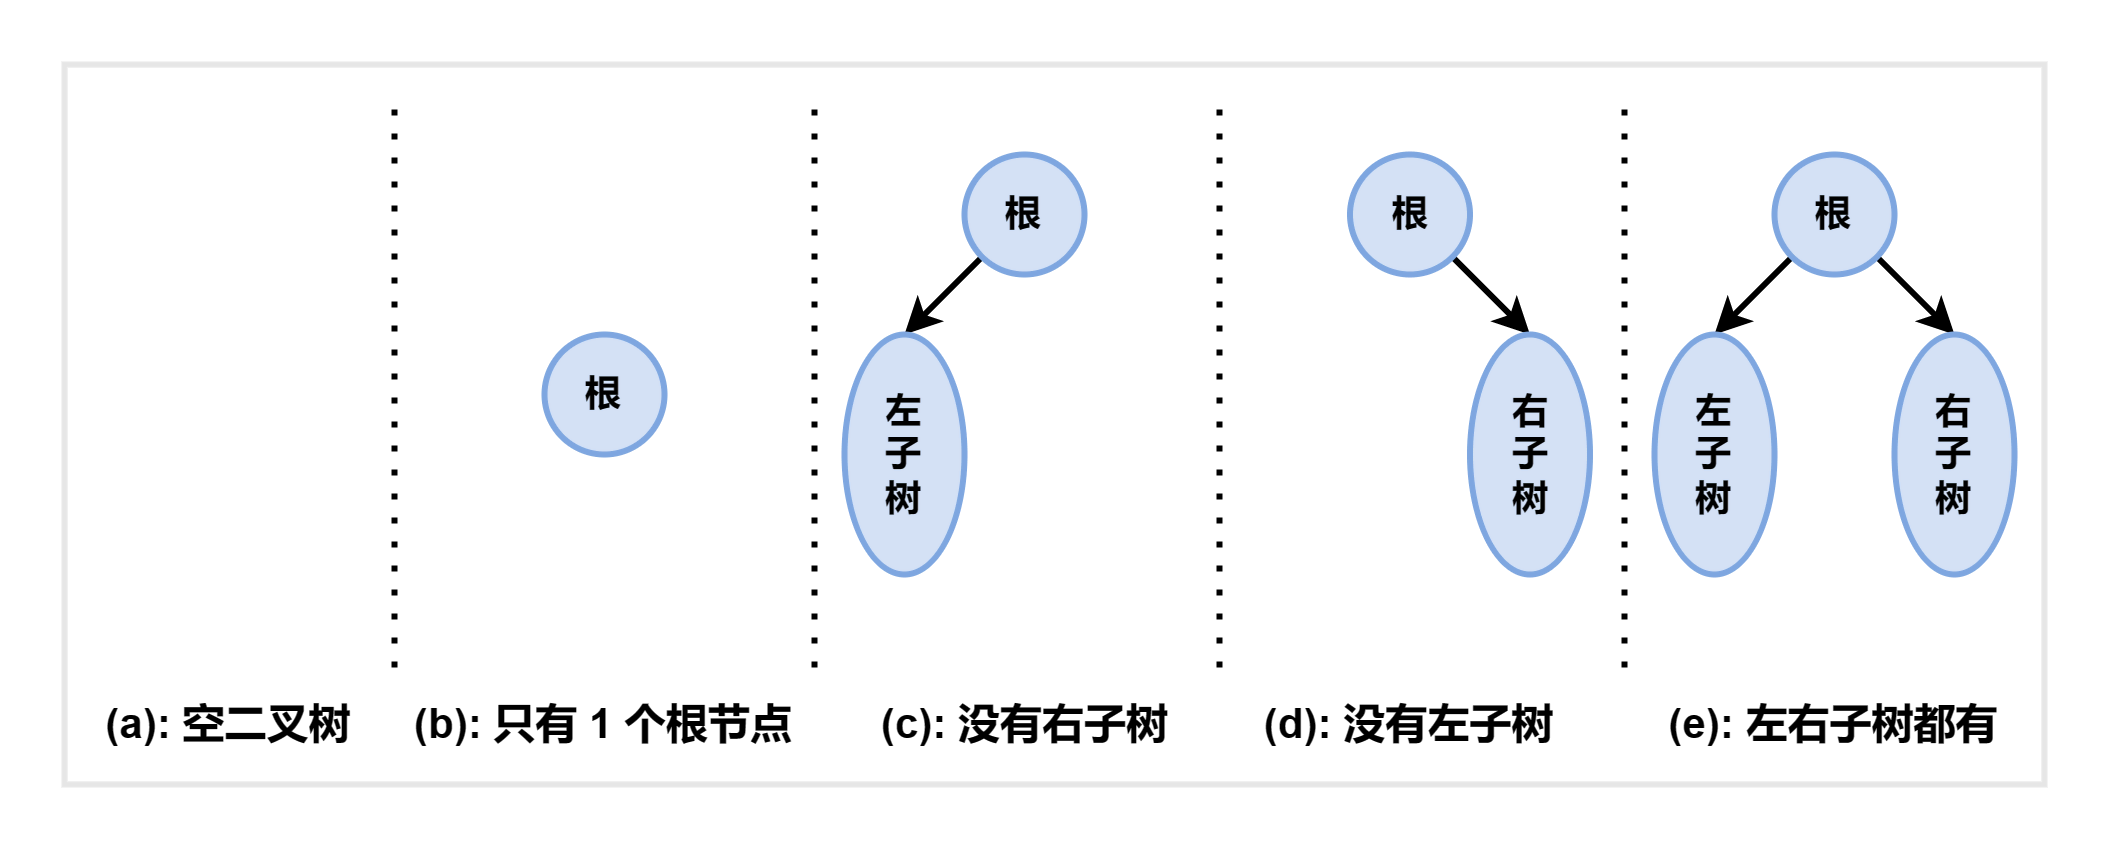 二叉树的 5 种基本形态